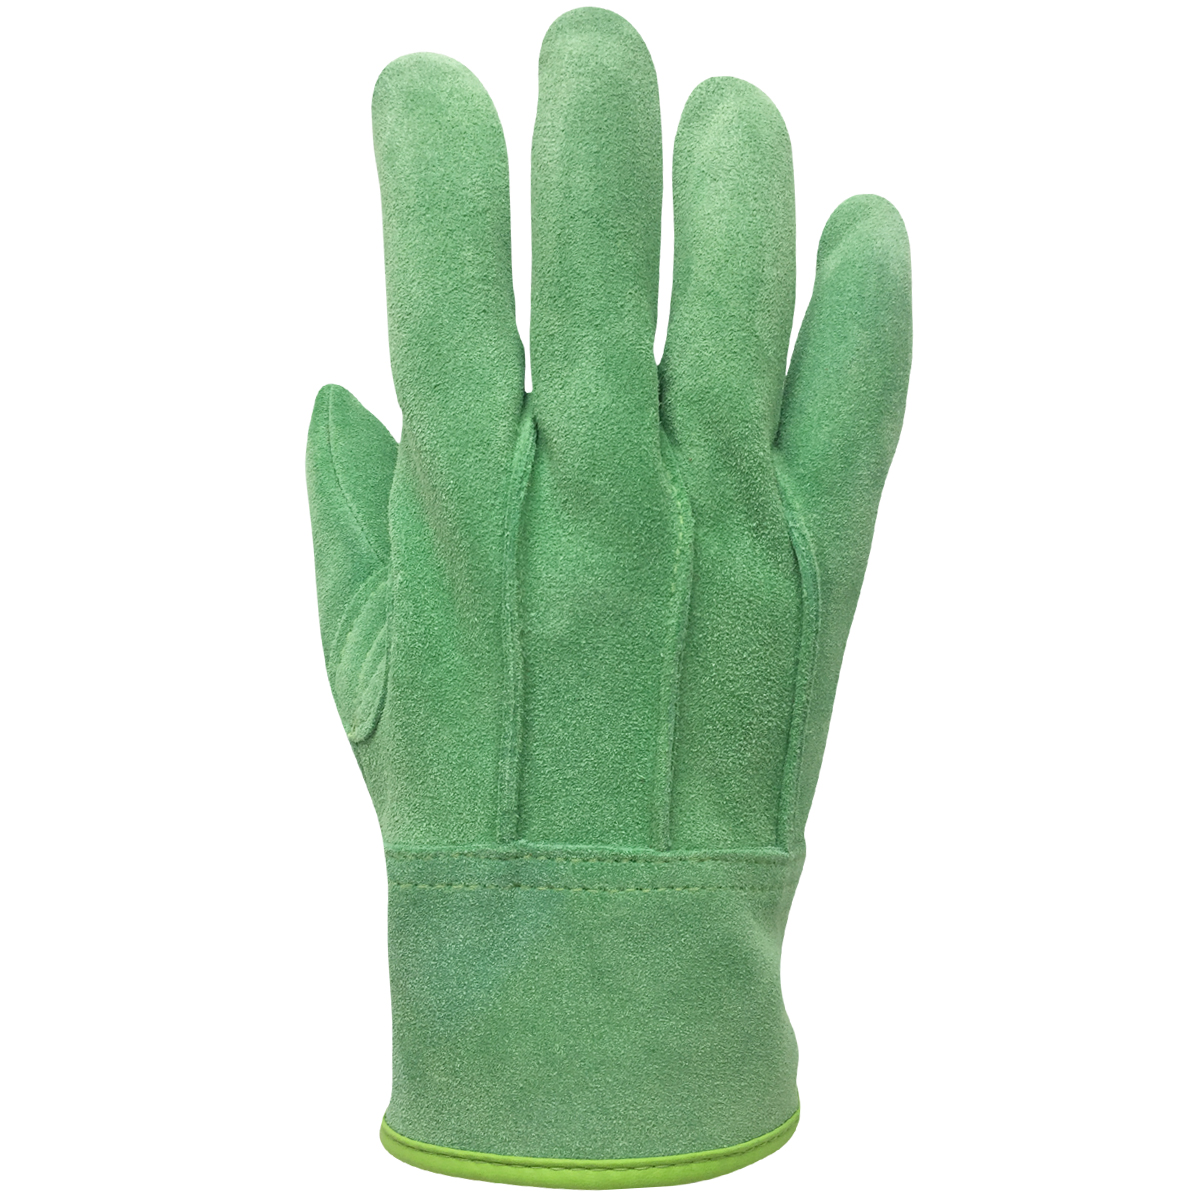 現場系女子 外縫い 内綿 グリーン AG2552 | ACE 作業用革手袋・作業用手袋のエース